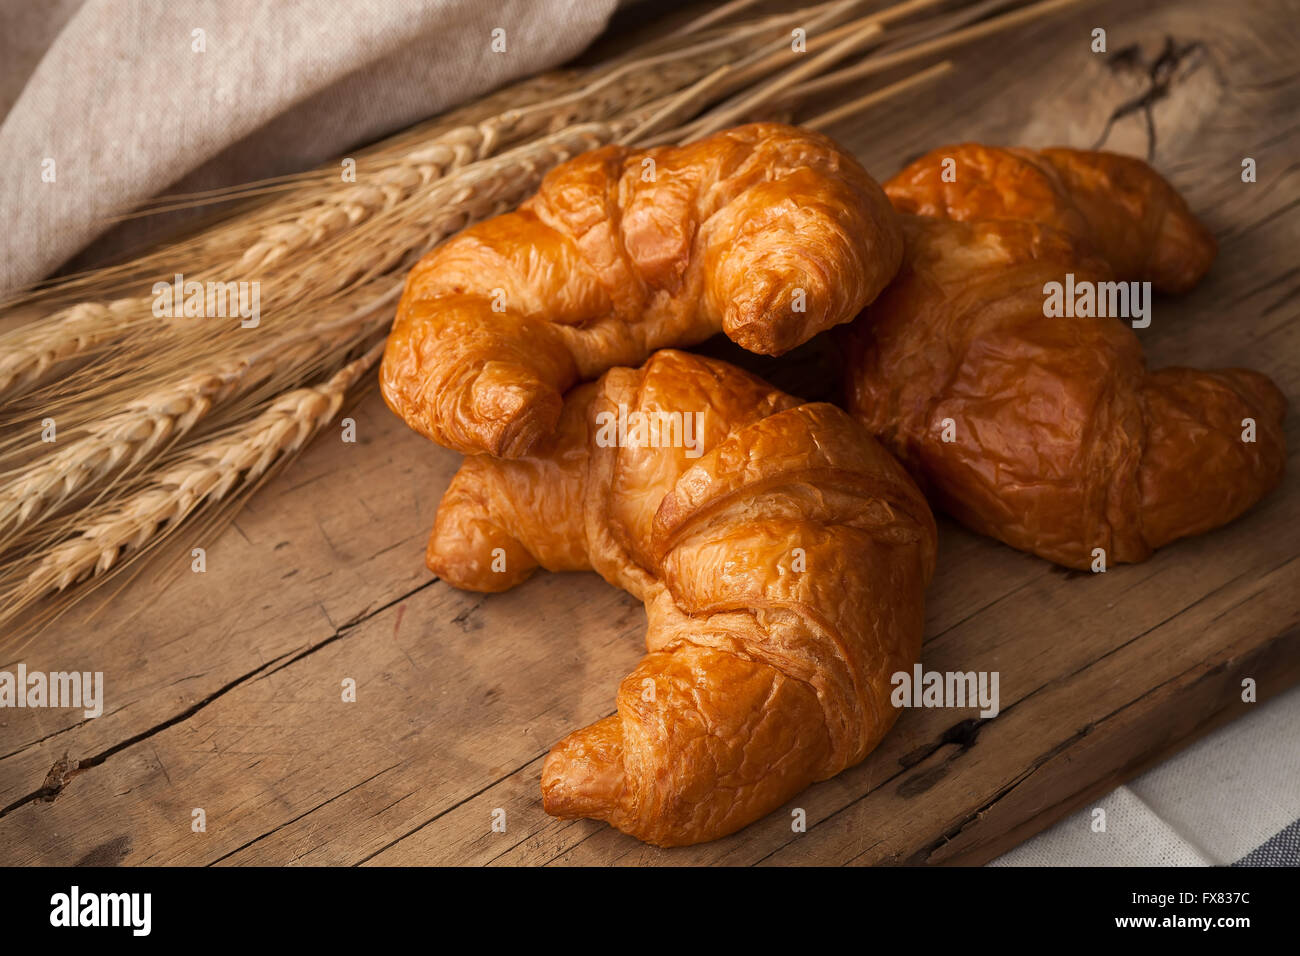 La vie toujours croissants savoureux fond rustique en bois petit-déjeuner brunch boulangerie Banque D'Images